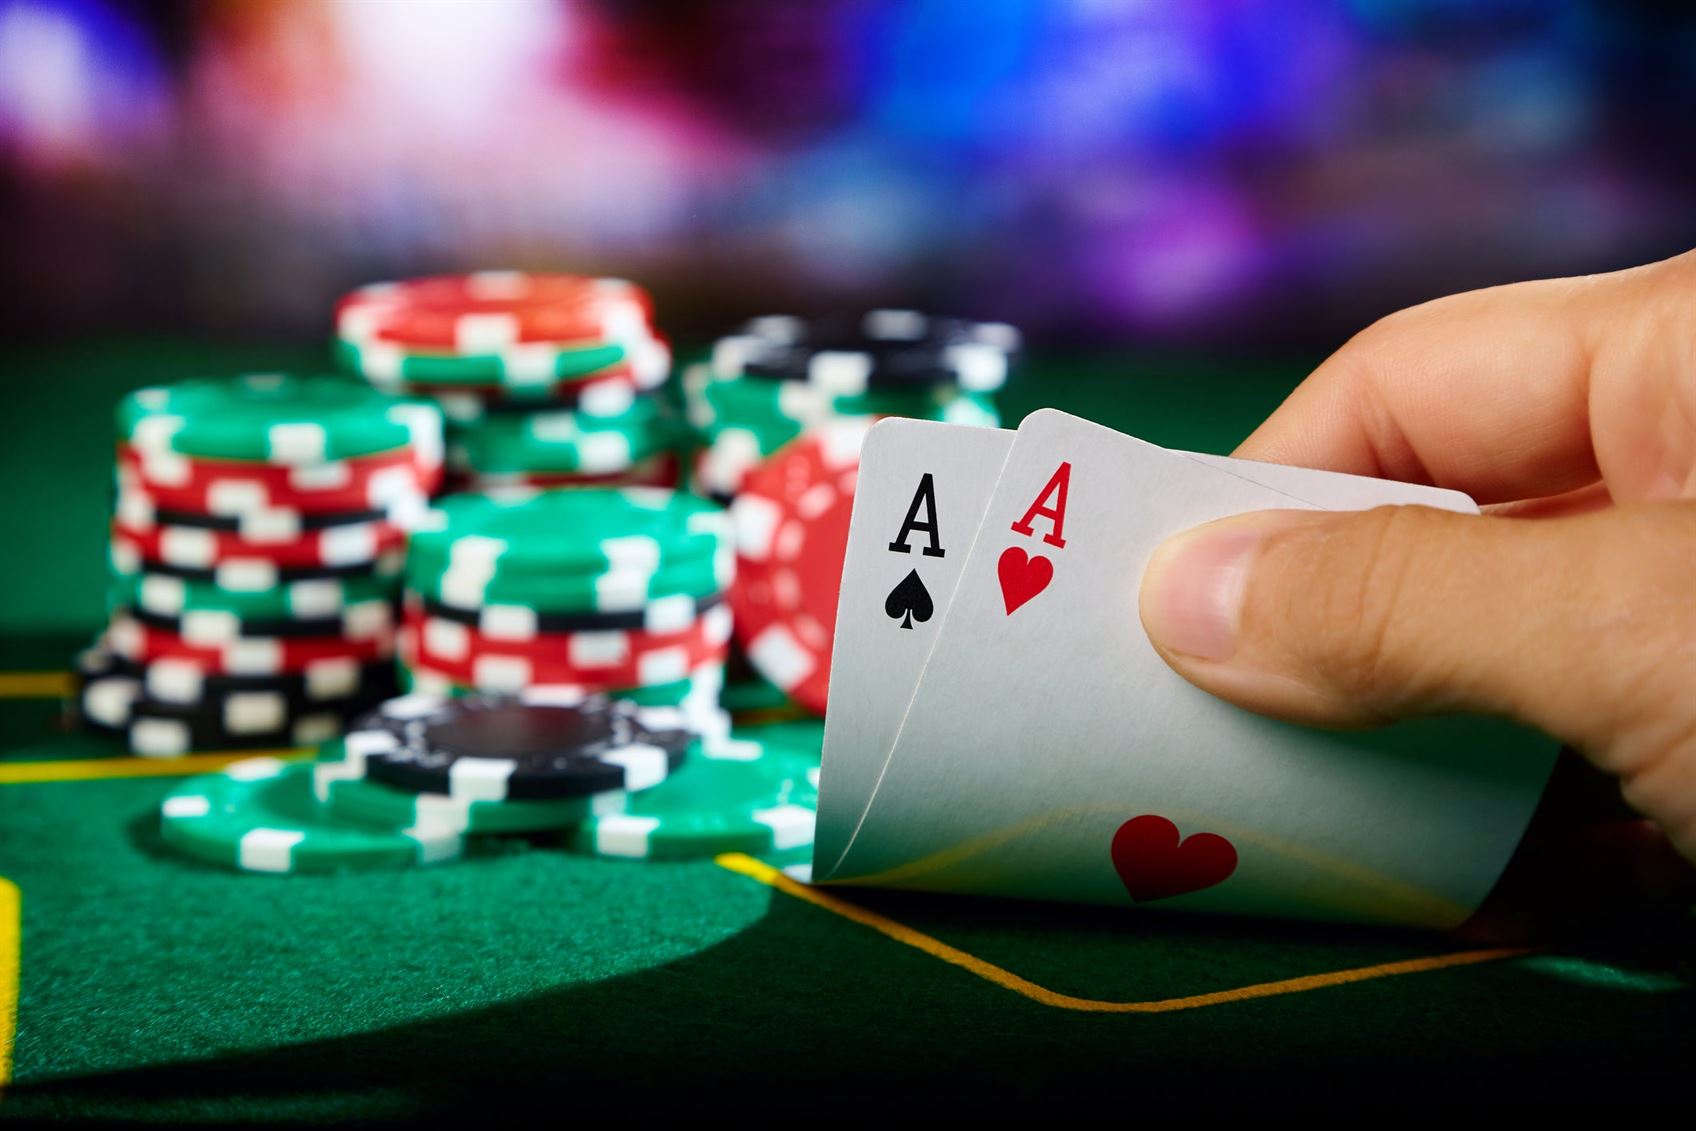 Desvendando o Código: A Ordem como Estratégia Vencedora no Poker